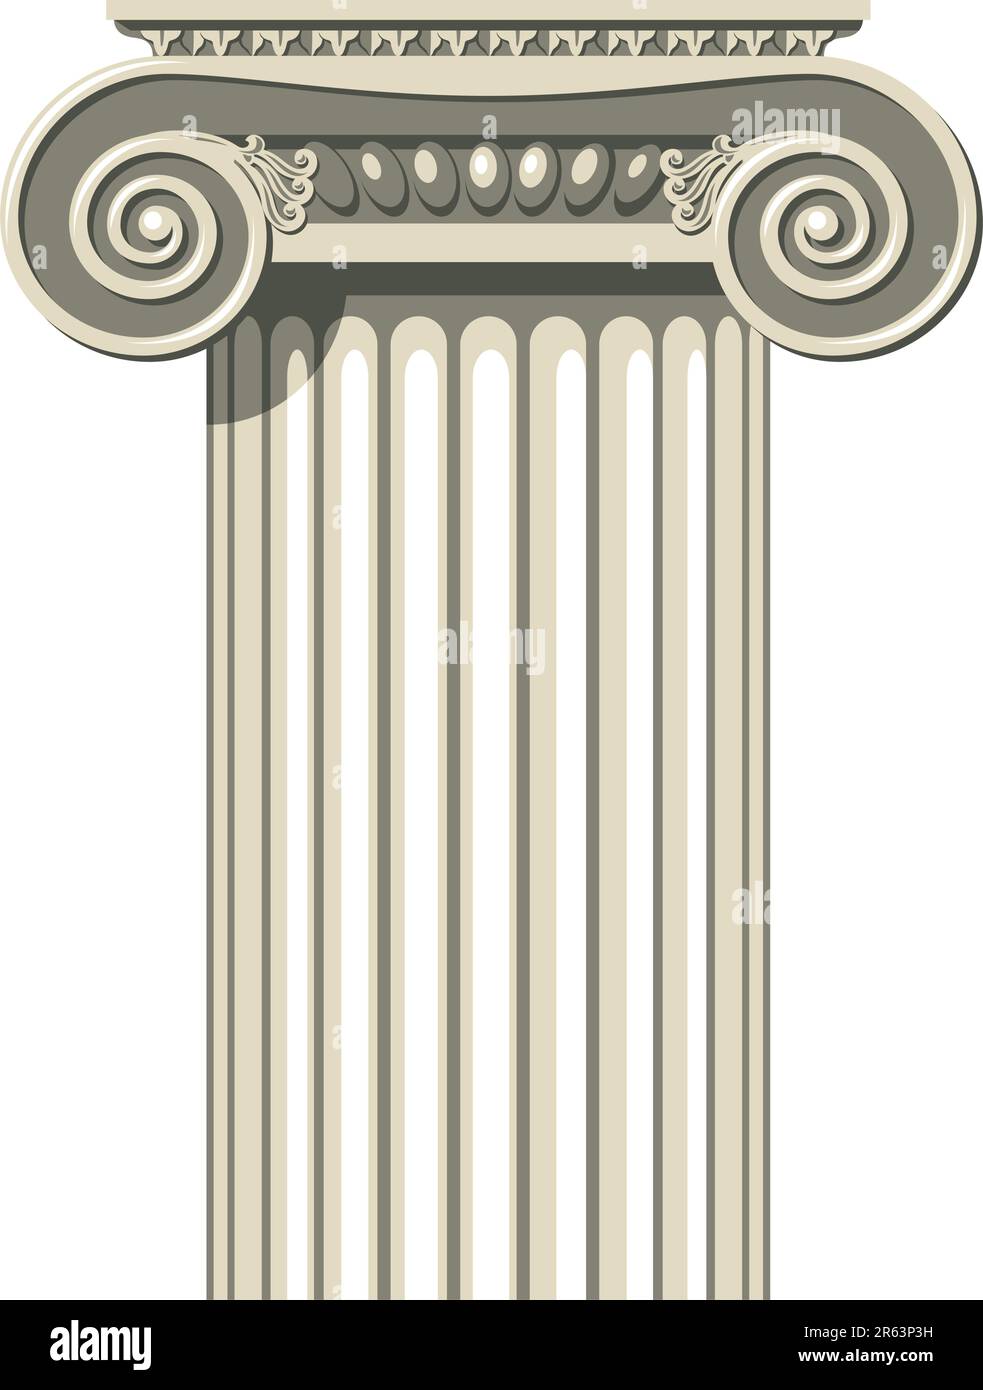 Illustration vectorielle d'une colonne Ionique grecque. Illustration de Vecteur